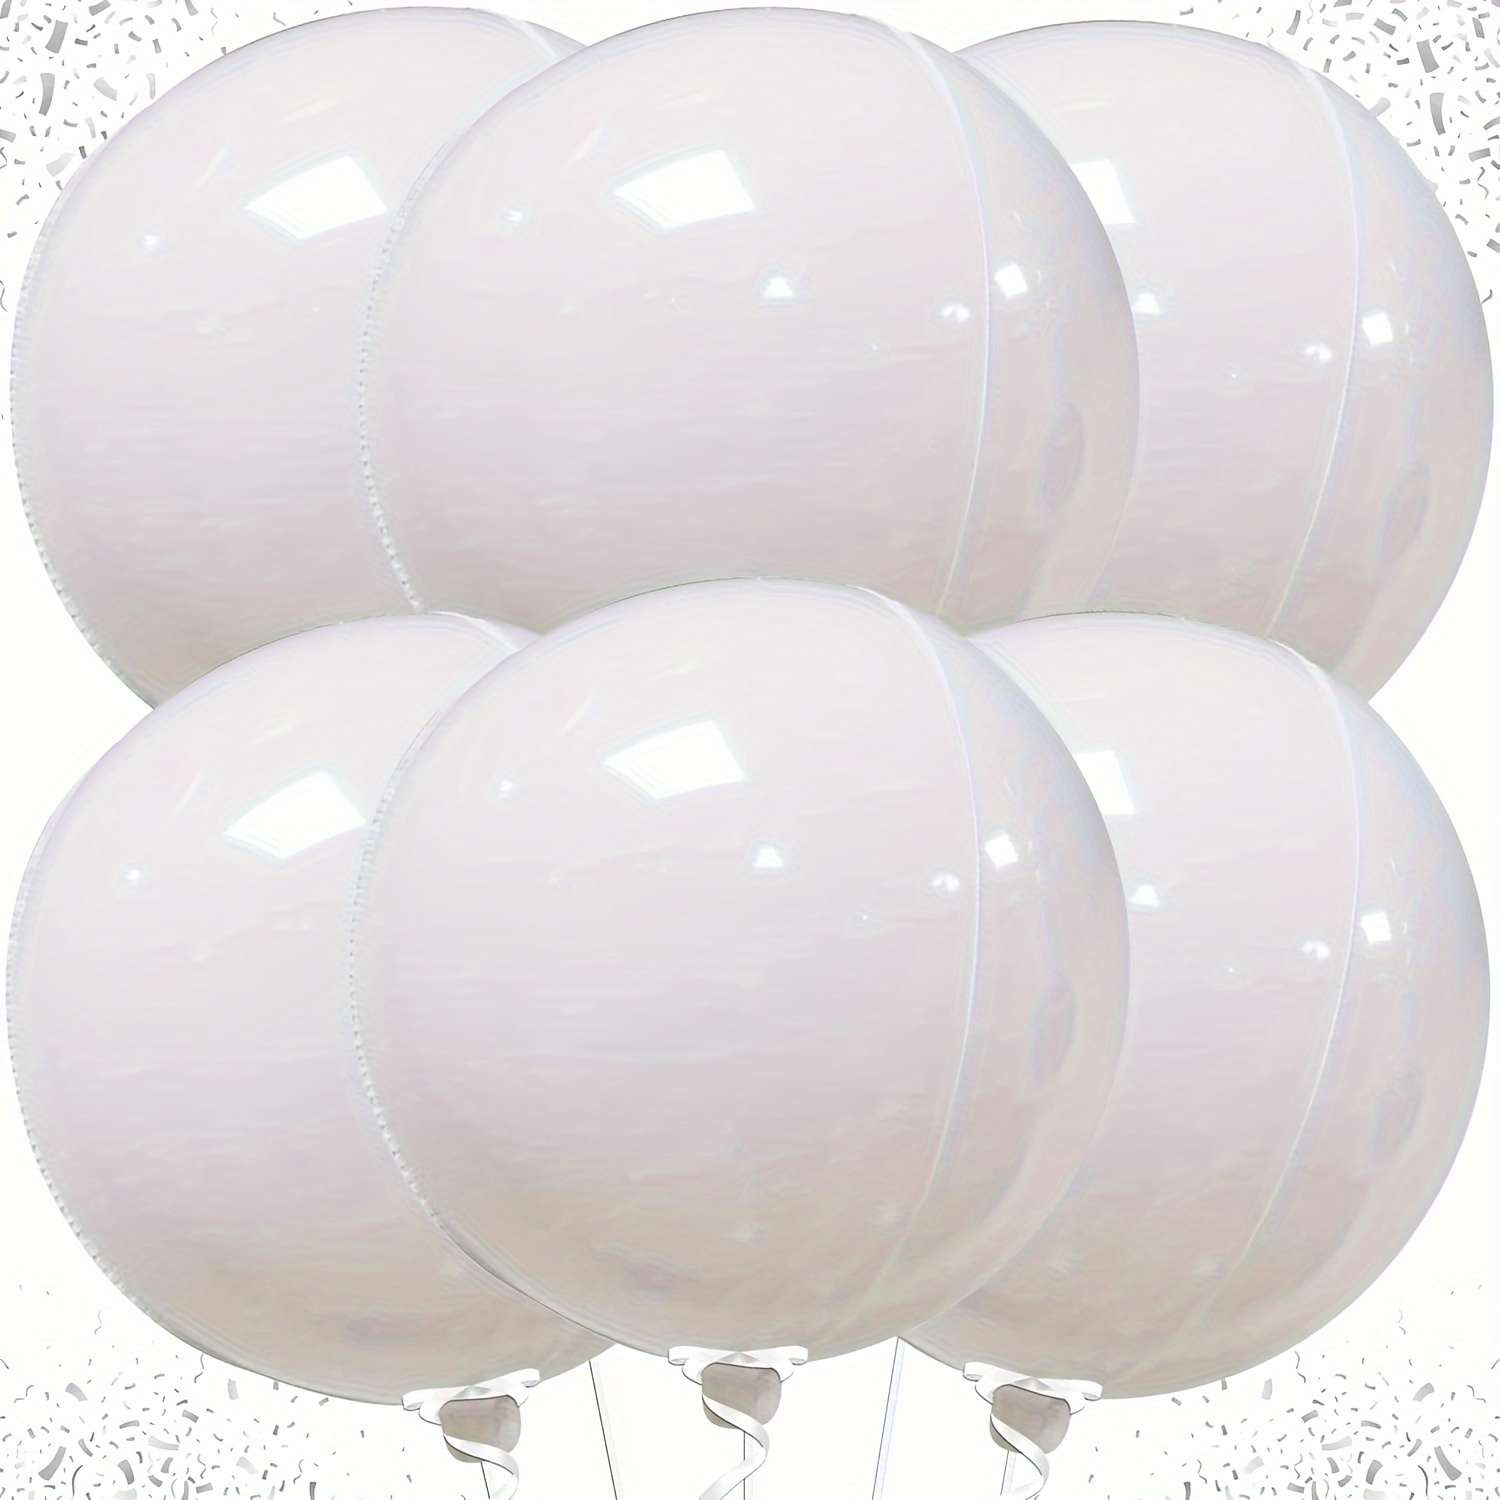 

Géant Ballon En Film De Polyester Blanc Métallique -6pcs Ballon 4D En Feuille D'Aluminium Blanc Décoration Convient Pour Mariage, Anniversaire, Fiançailles, Décoration De Fête D'Halloween